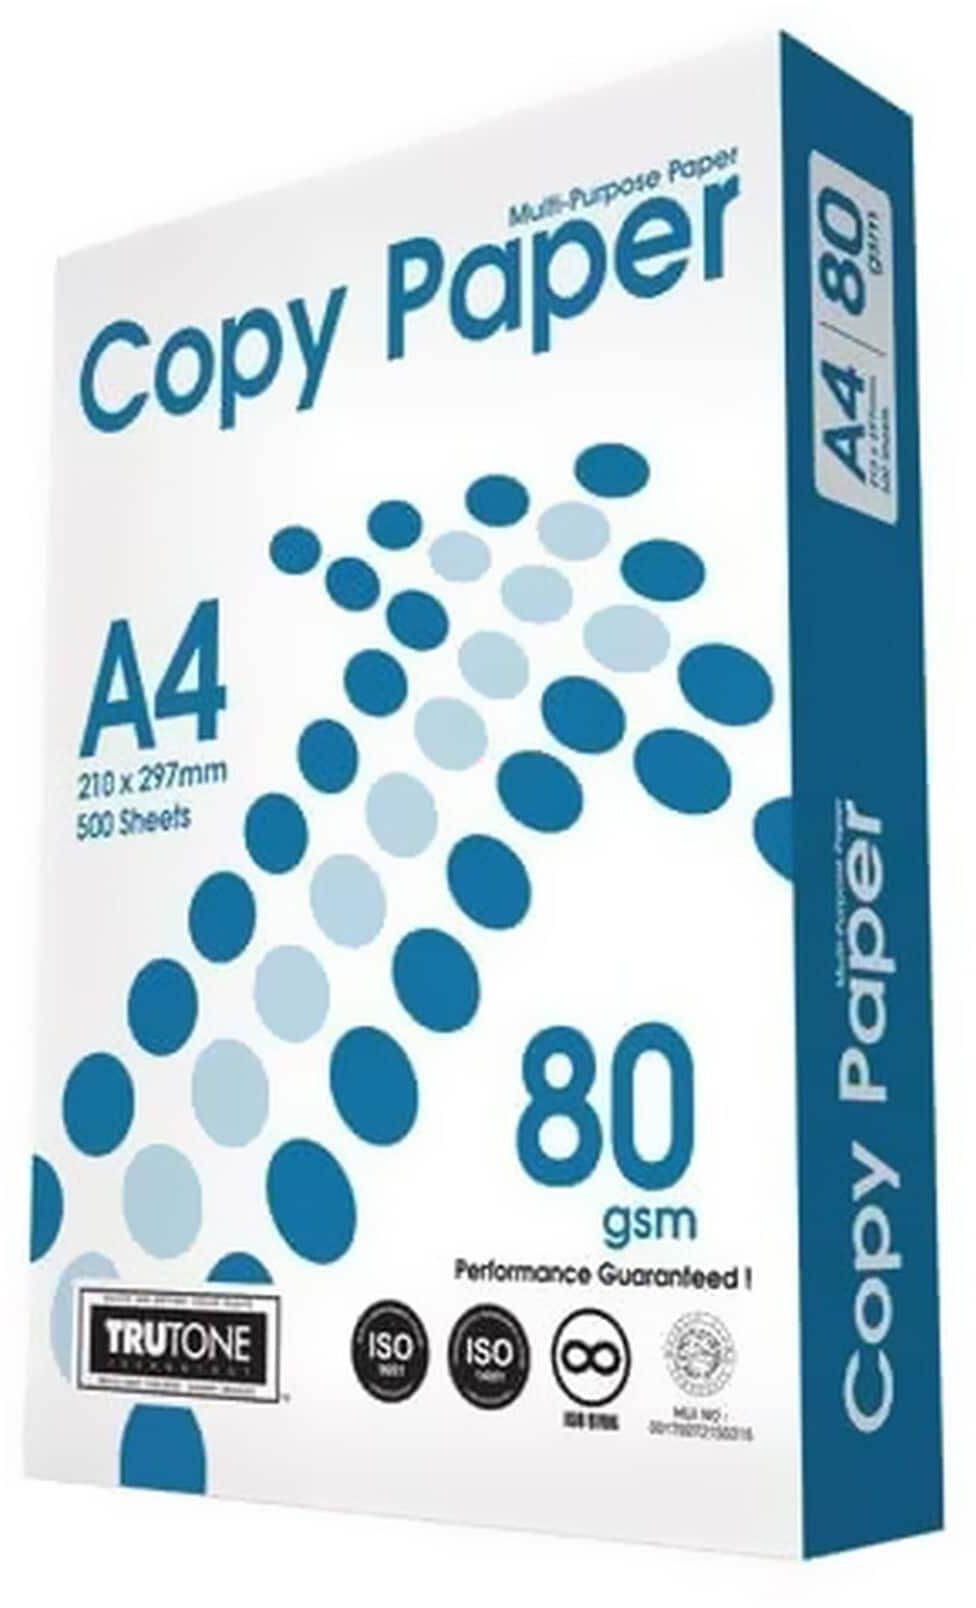 Copy Paper A4 80GSM 500 Sheets